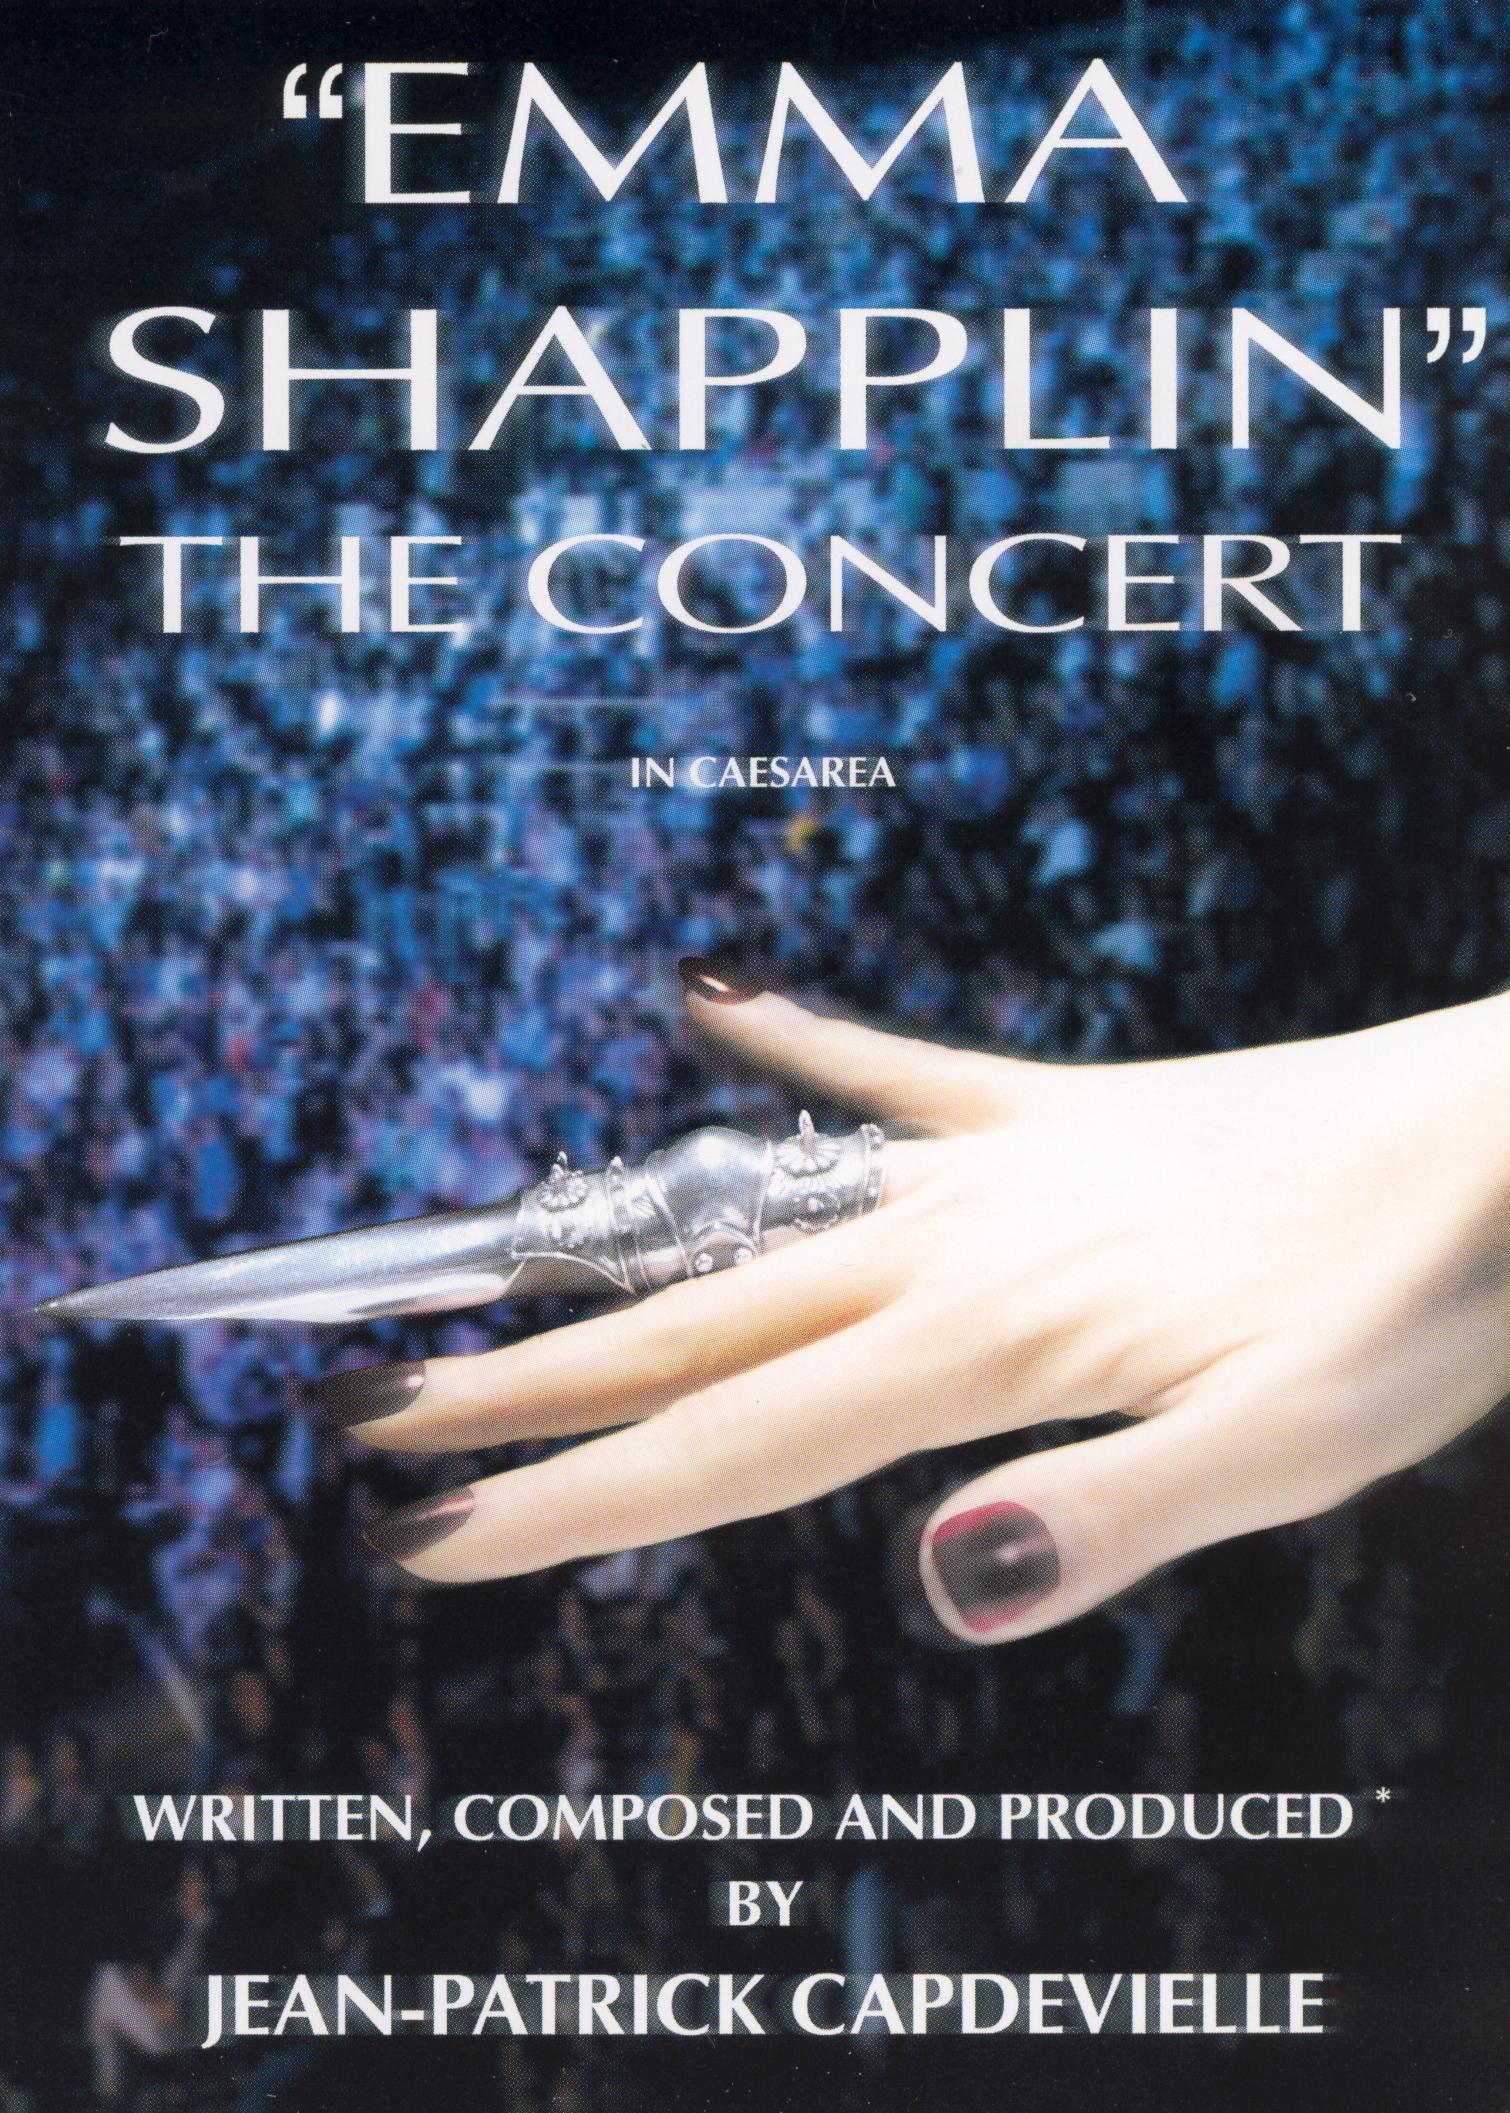 Emma Shapplin The Concert in Caesarea (2003) Releases AllMovie